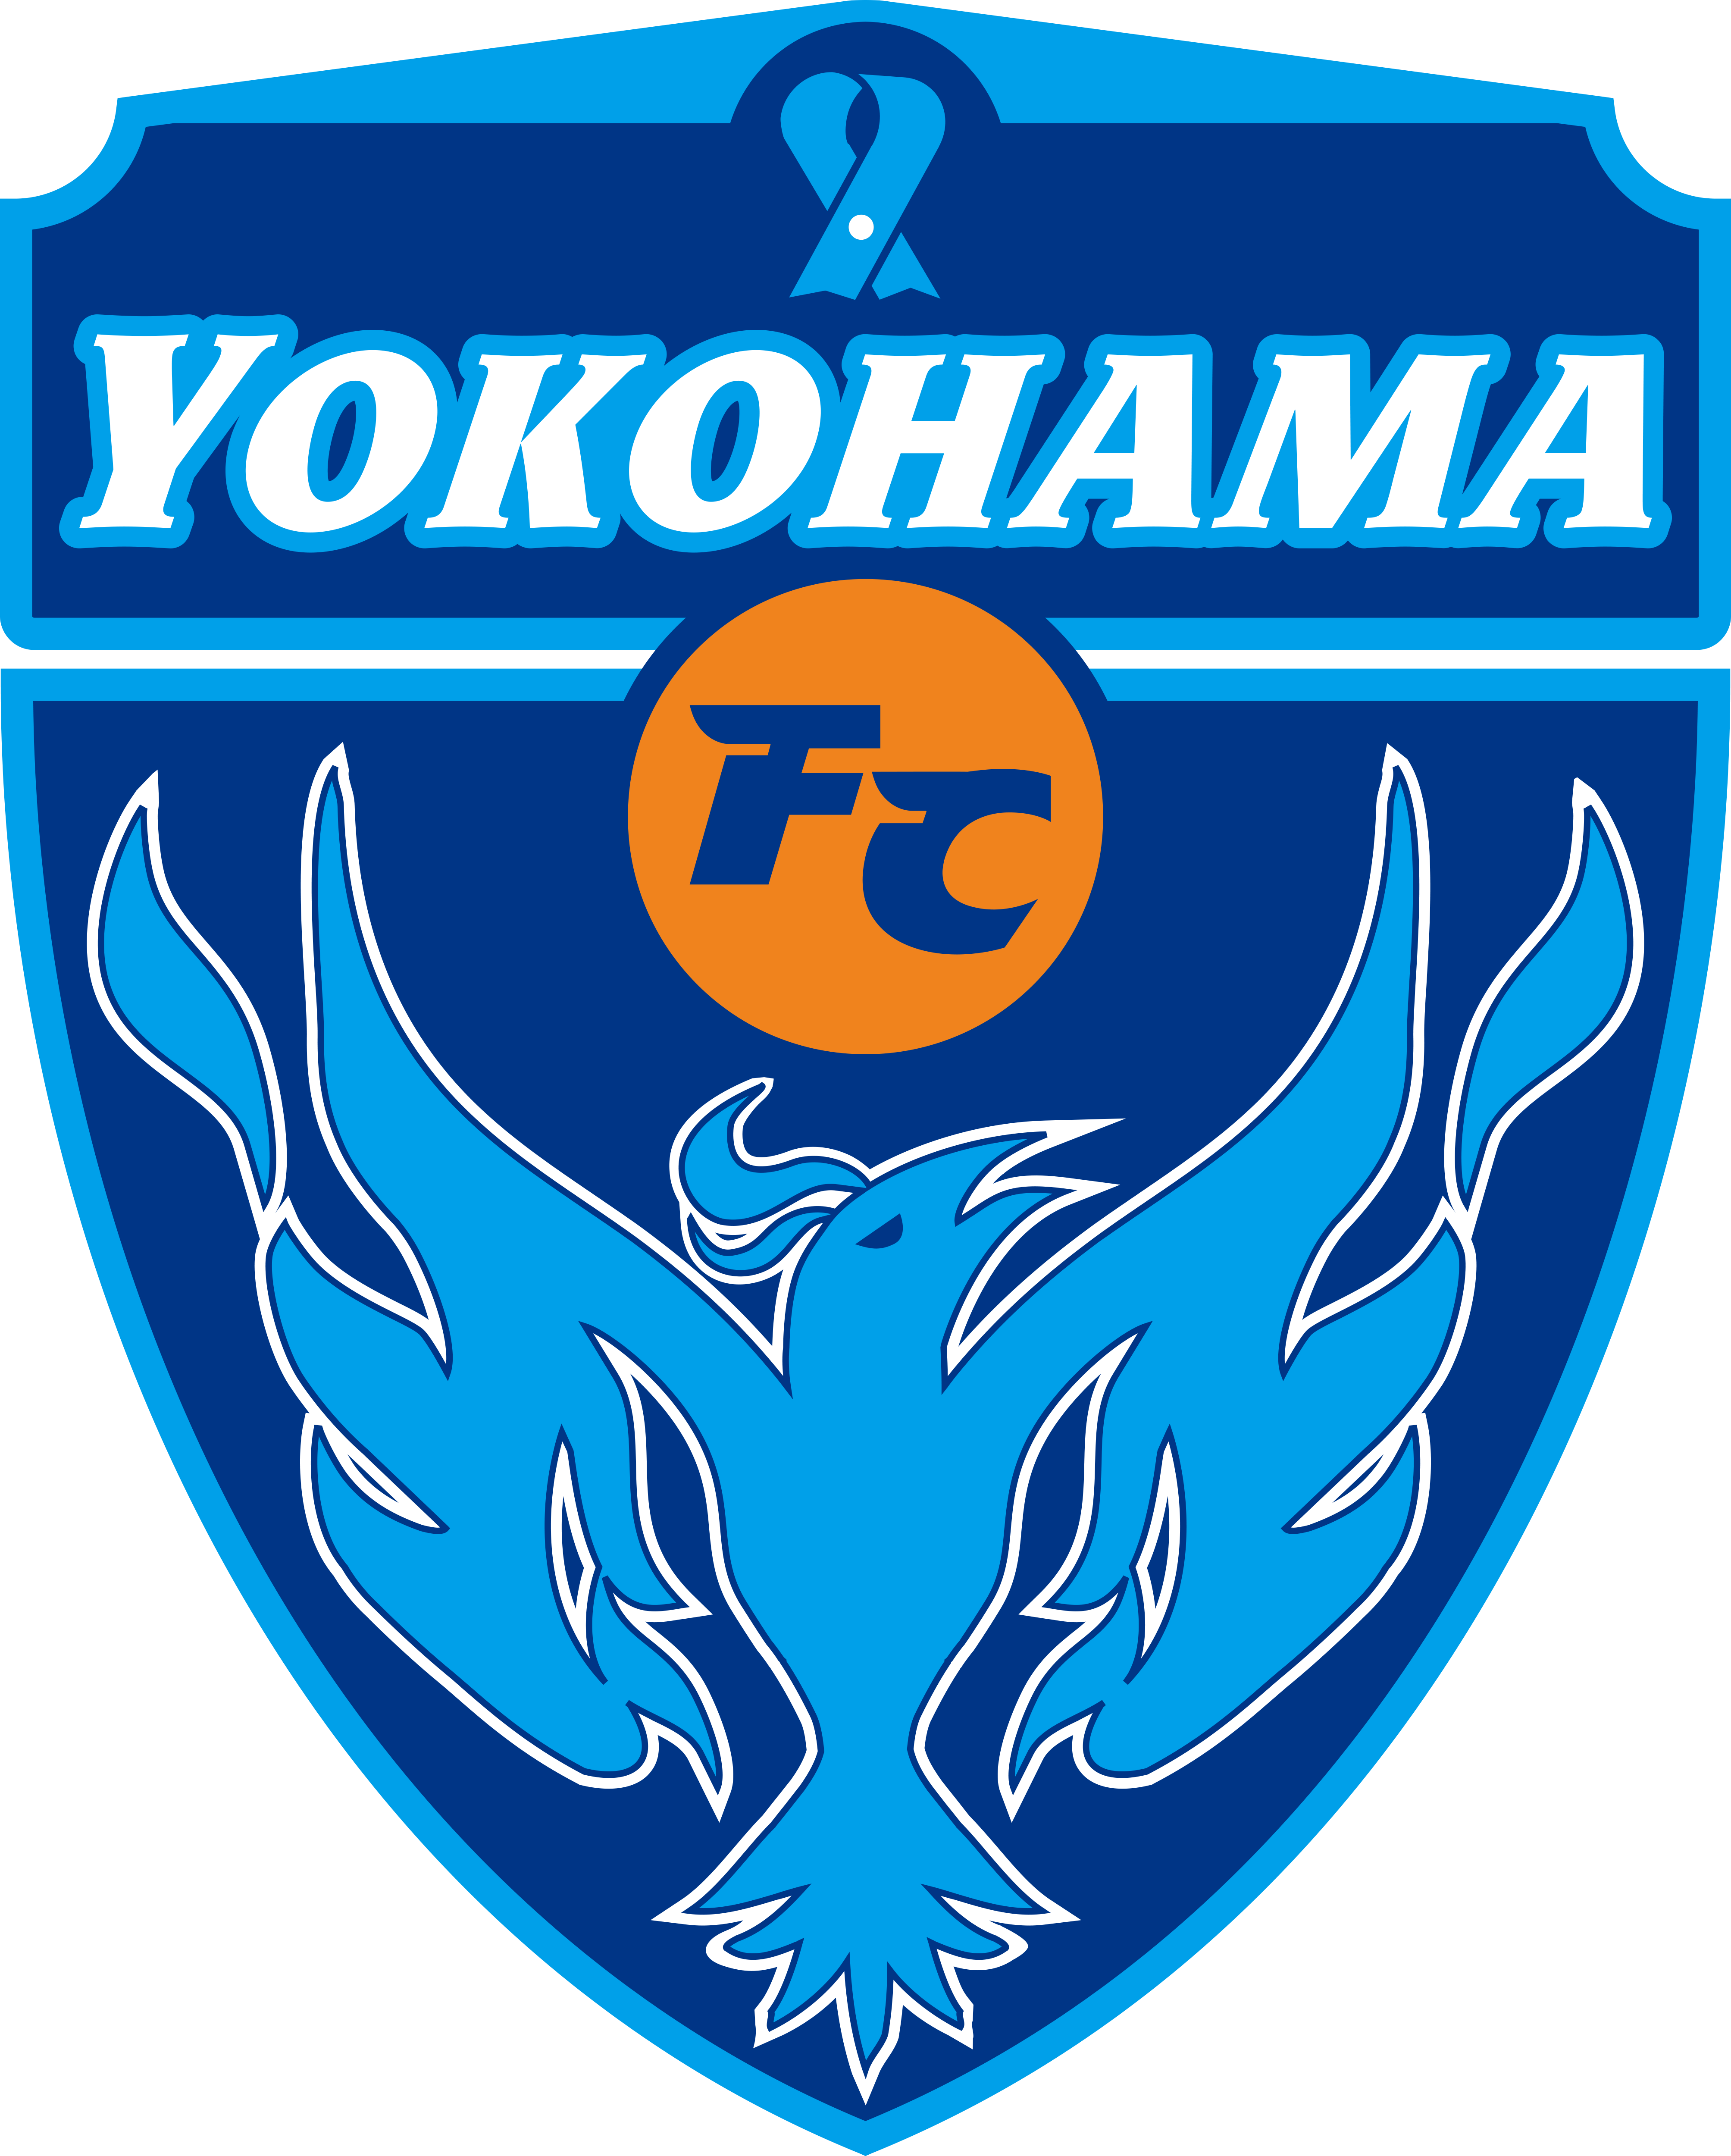 橫濱足球俱樂部(橫濱FC)